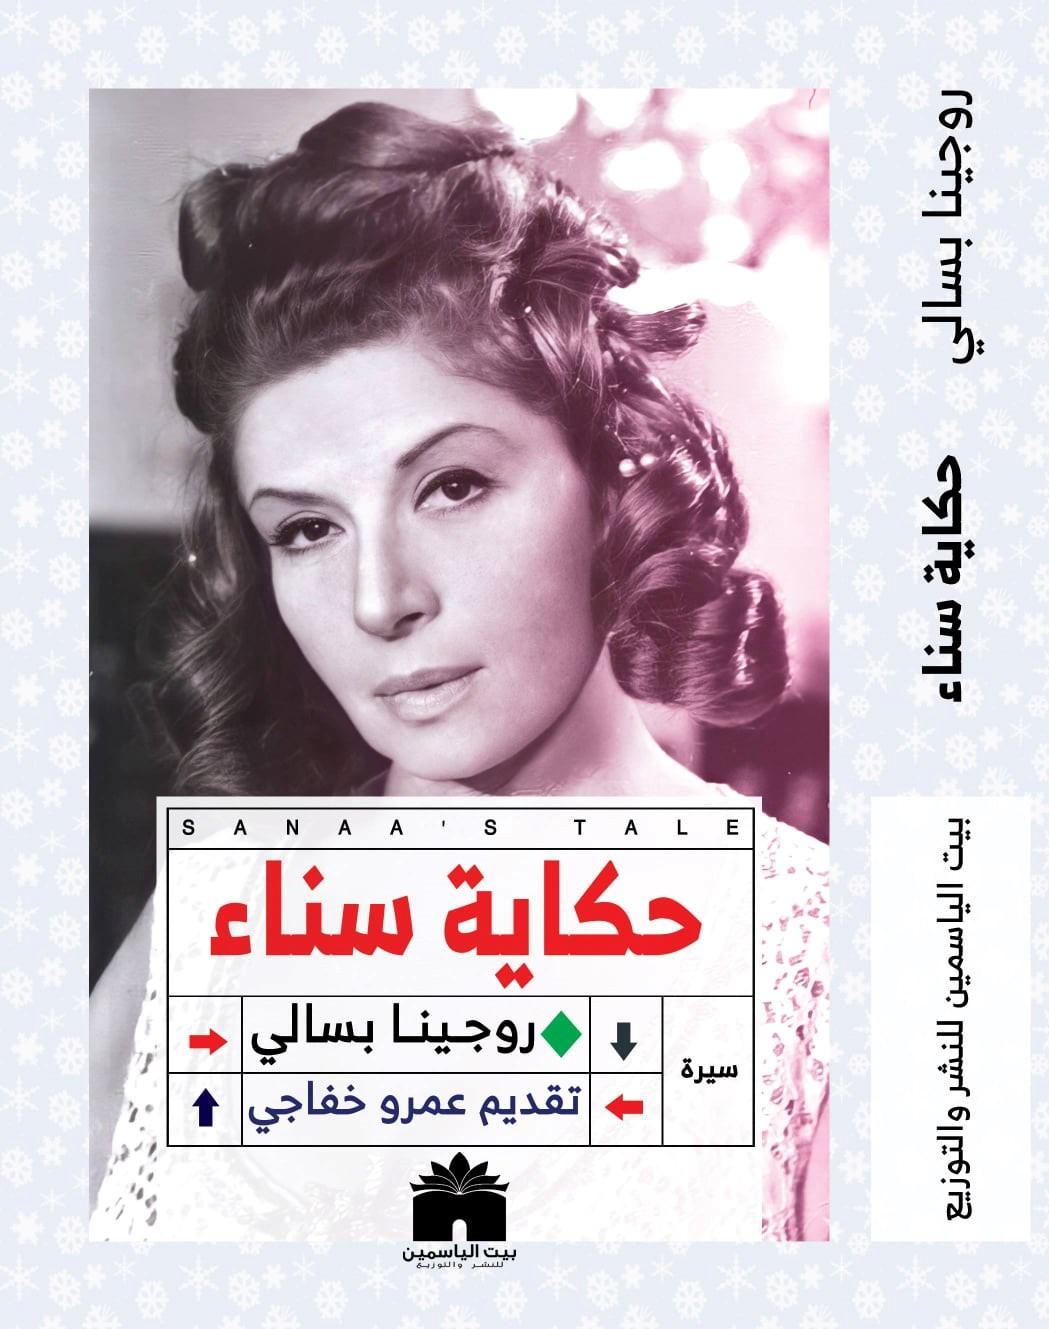 كتاب حكاية سناء جميل من أفضل كتب السيرة الذاتية لأبرز الشخصيات العربية في عام 2021